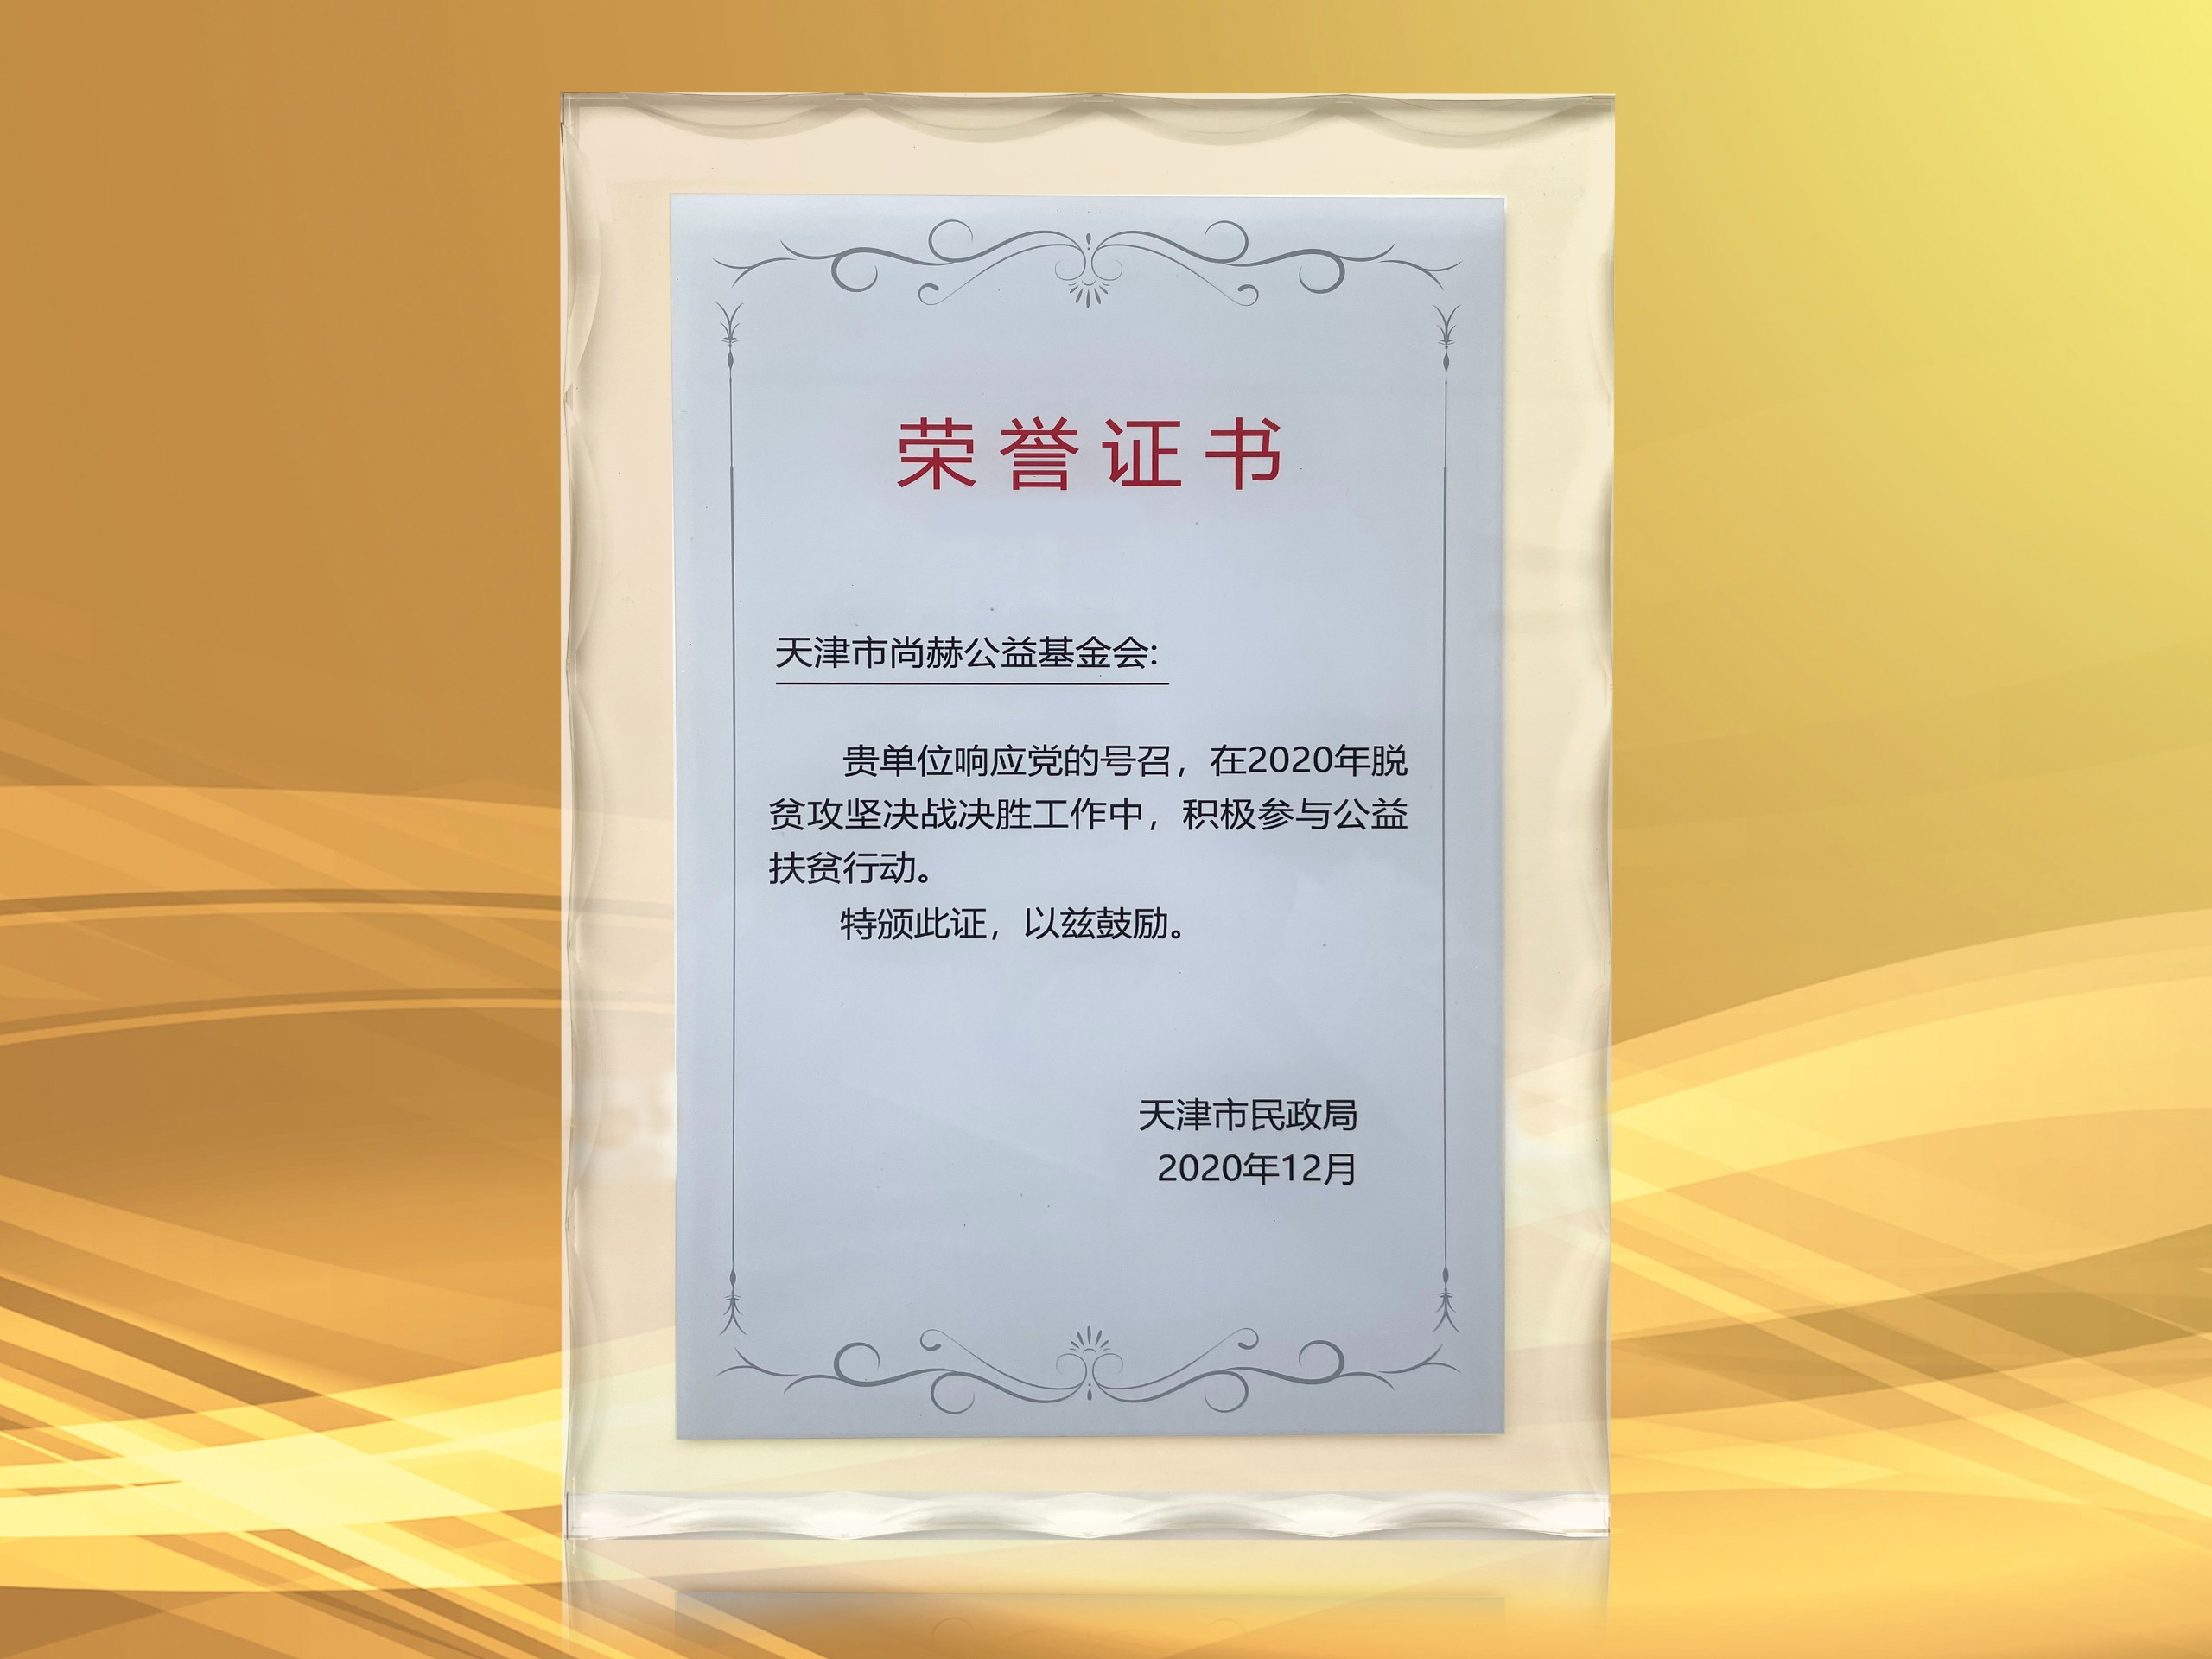 3月-皇家体育(中国)有限责任公司公益基金会获得天津市民政局颁发的荣誉证书